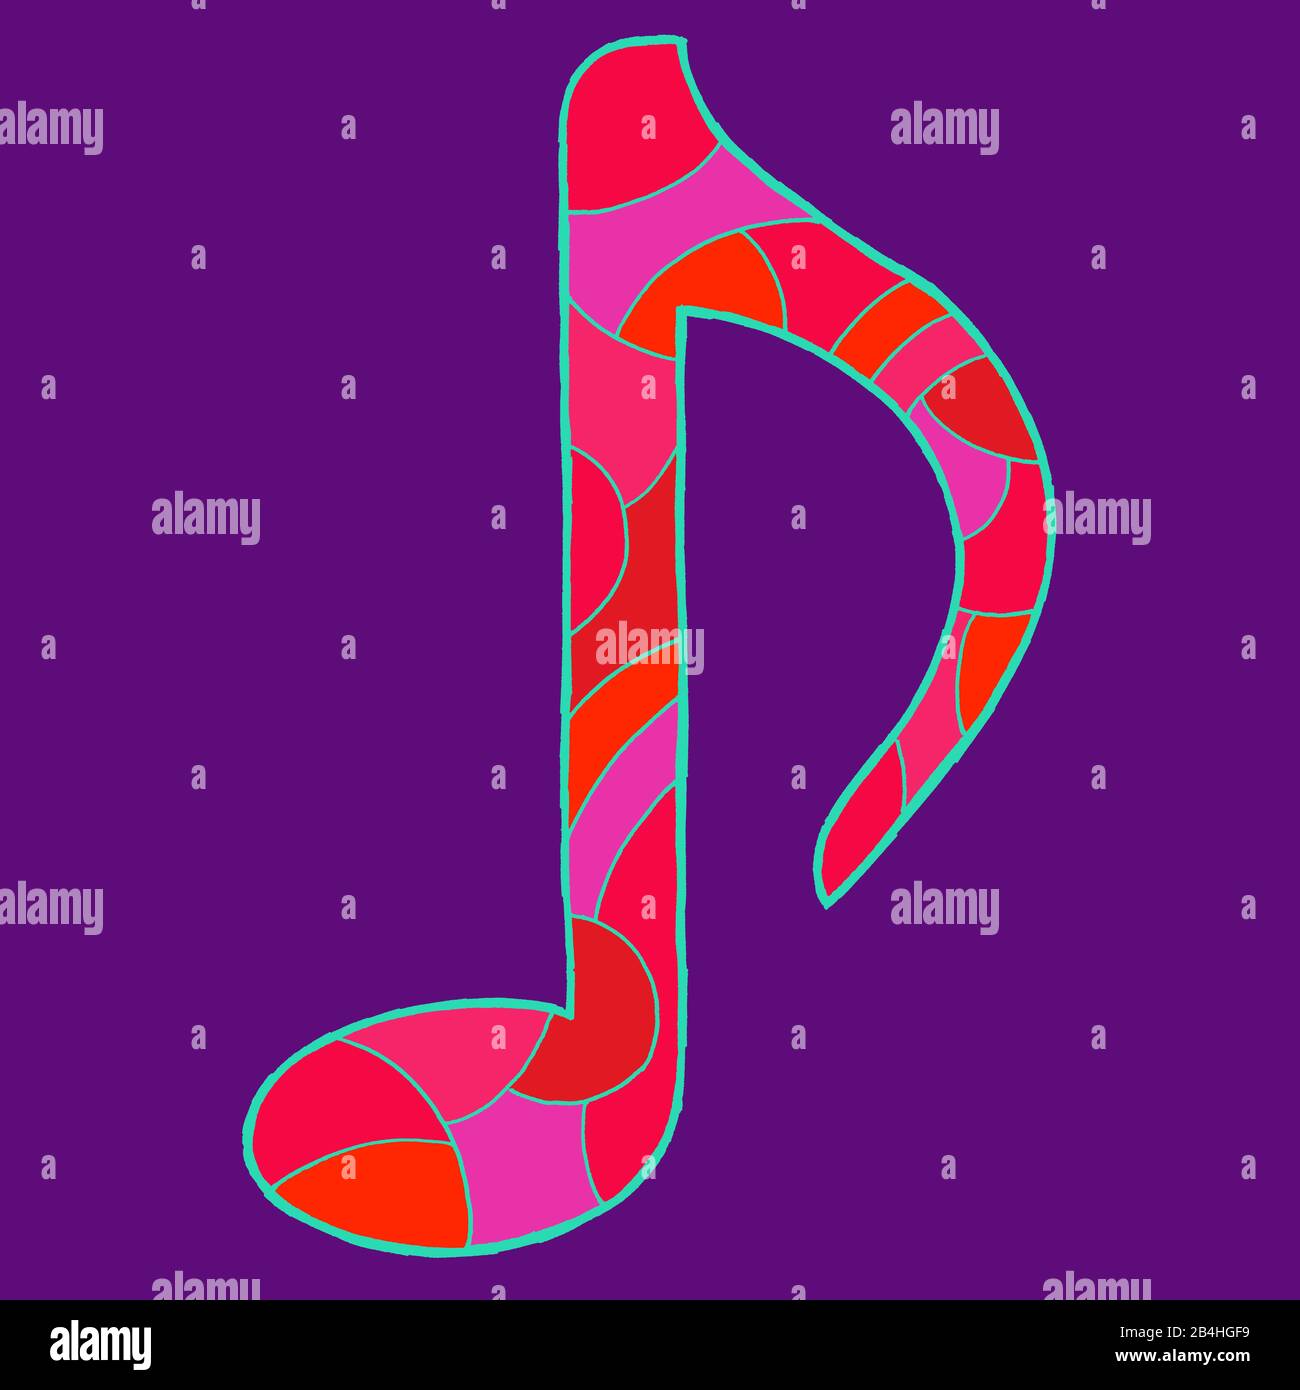 Notenzeichnen, gezeichnet als Vektorillustration, in rot-violetten Farbtönen in der Pop-Art-Stilistik Stockfoto